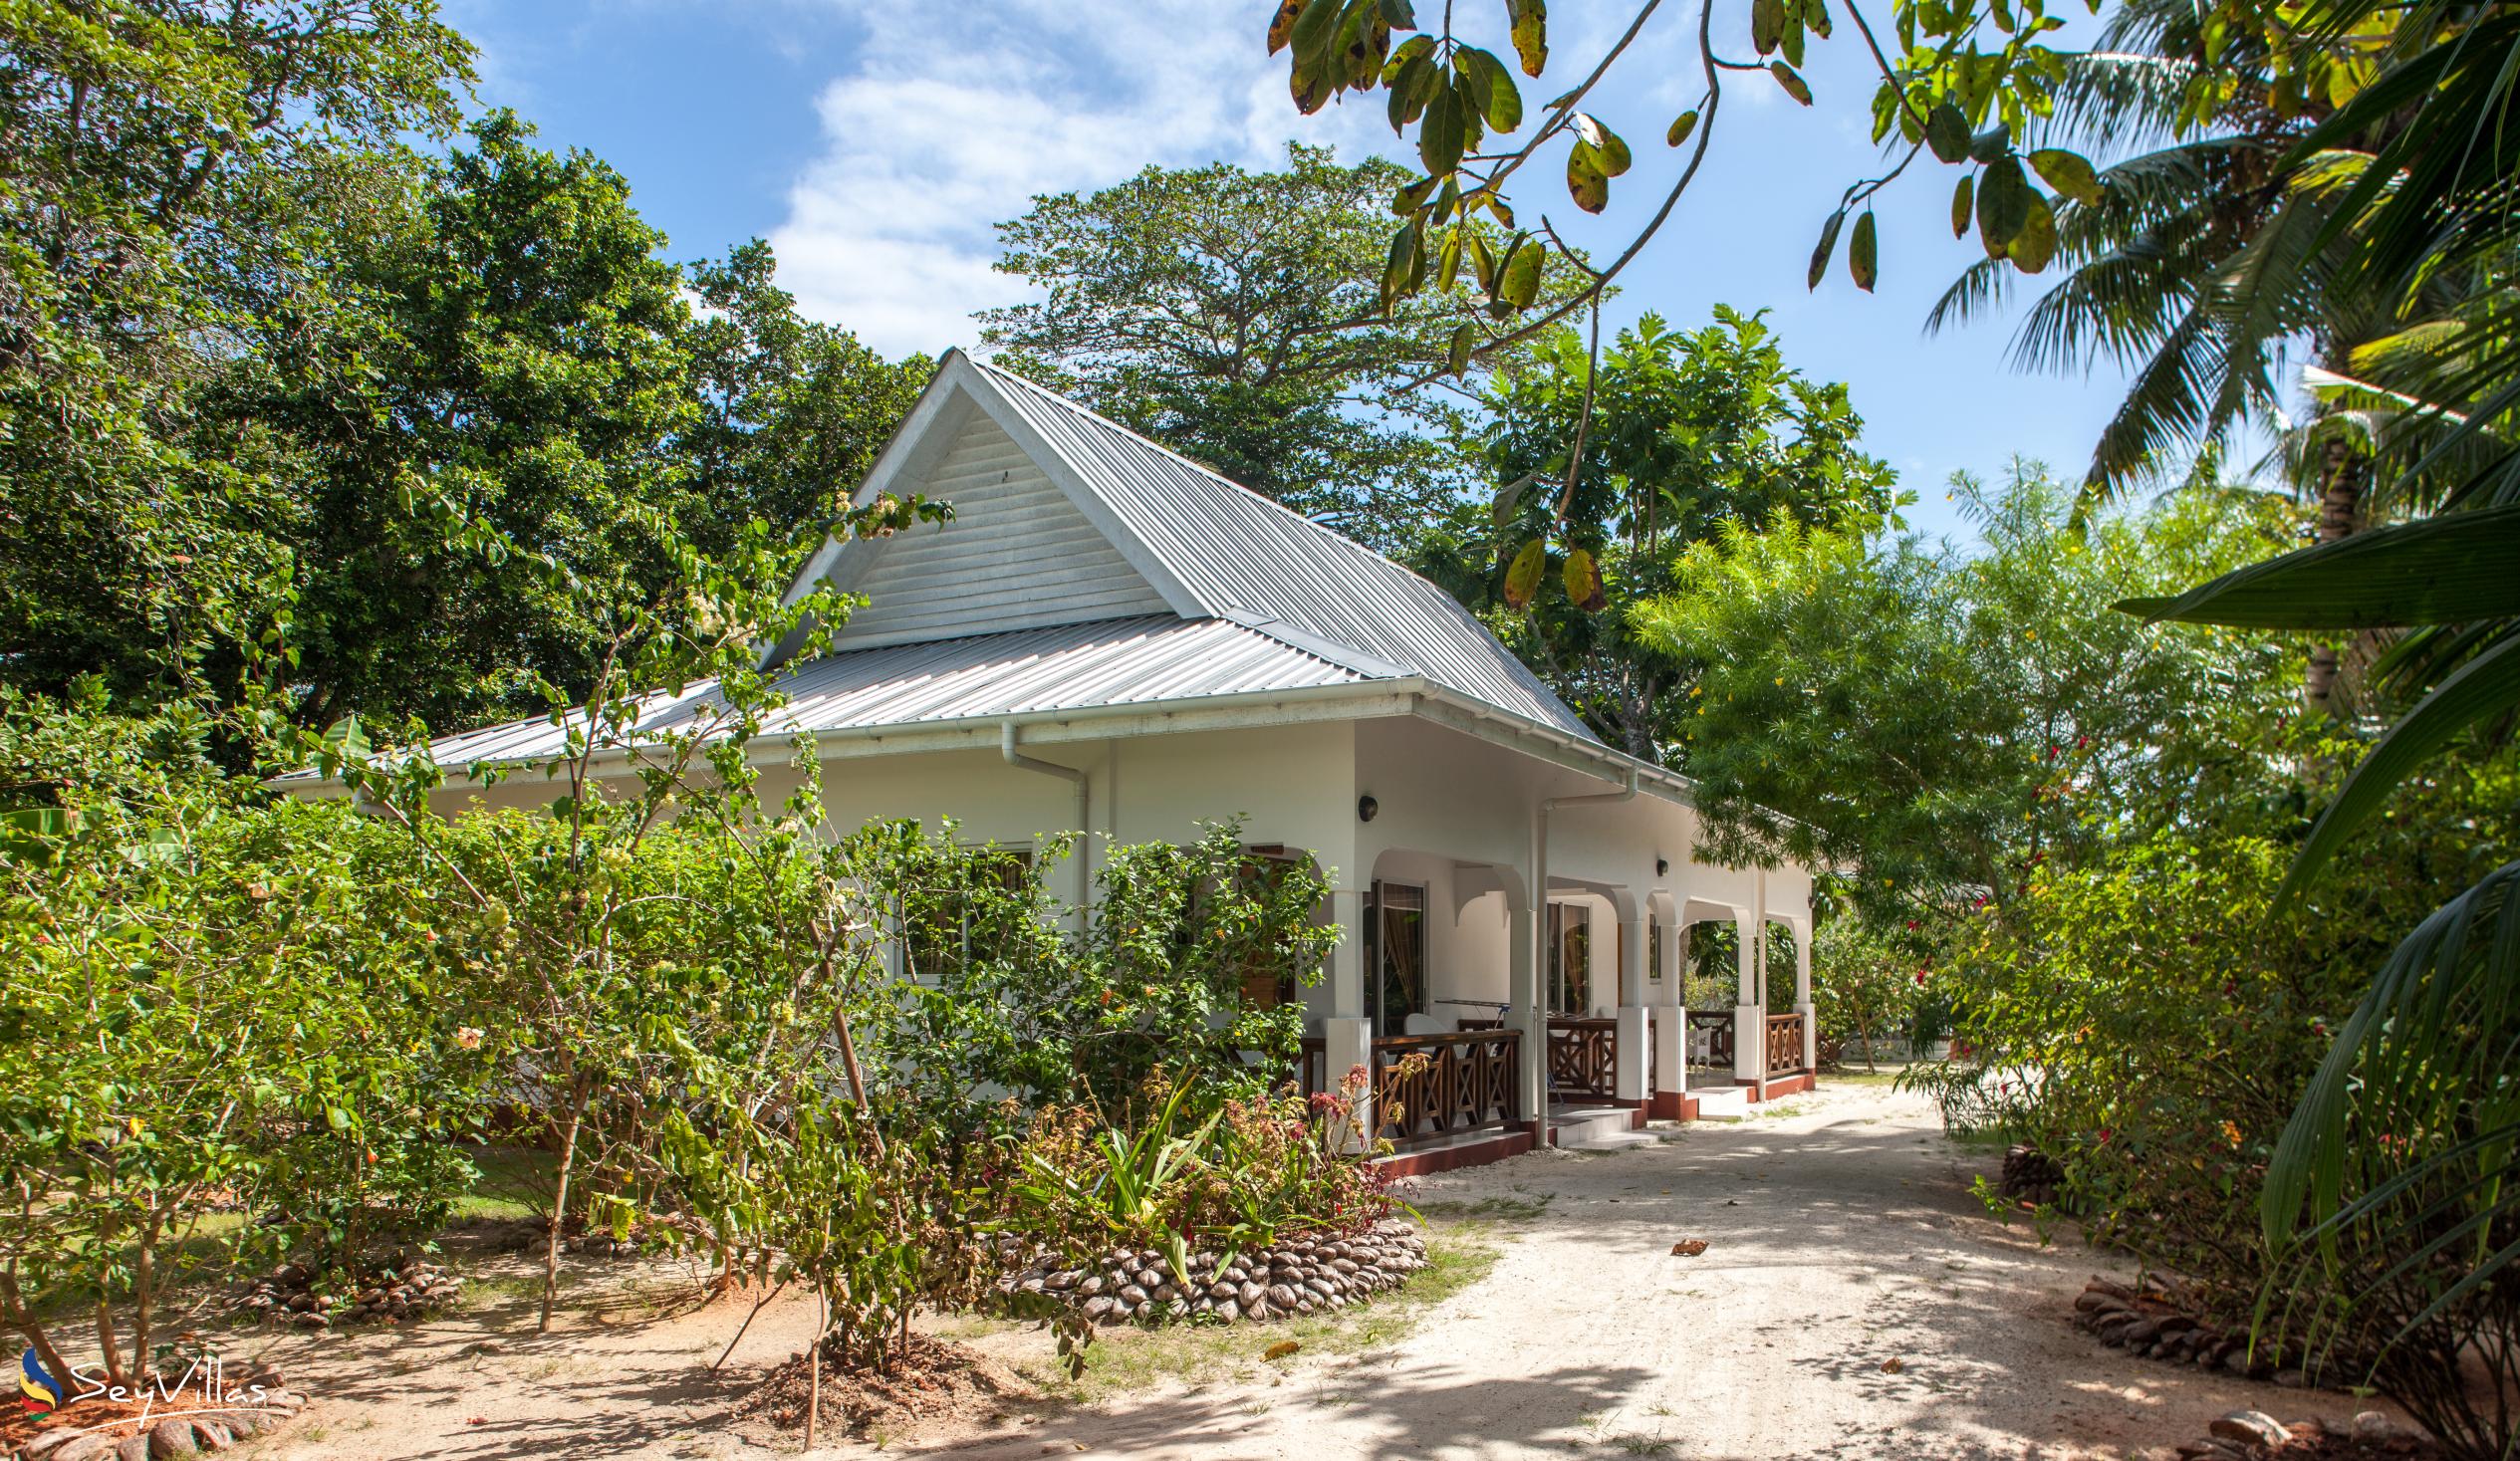 Foto 7: Villa Veuve - Aussenbereich - La Digue (Seychellen)